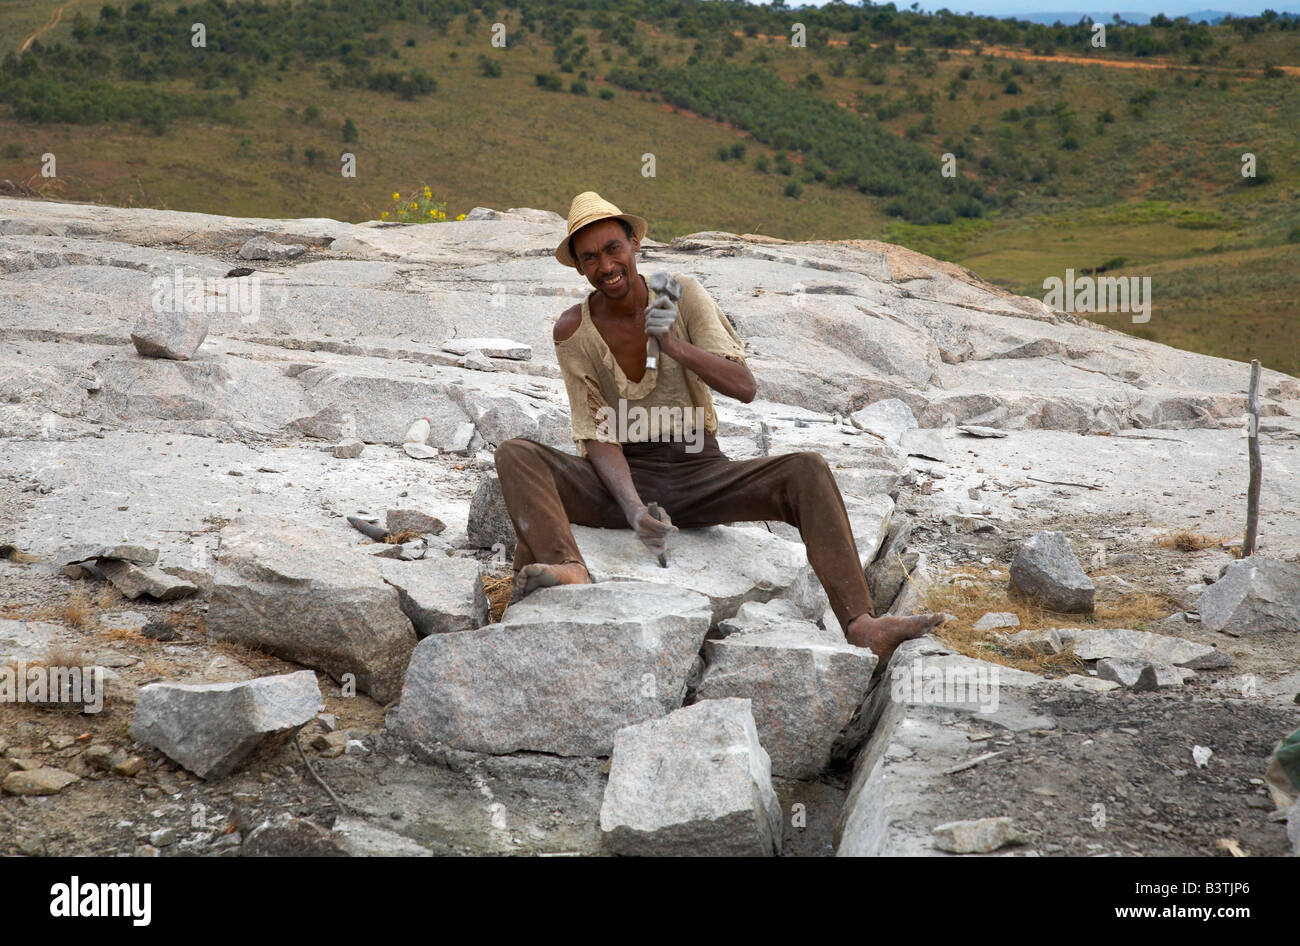 Heureusement malgache la ciselure des blocs de granit dans la roche Madagasse sitzt auf einem fröhlich und meißelt Granitsteine Berg Banque D'Images